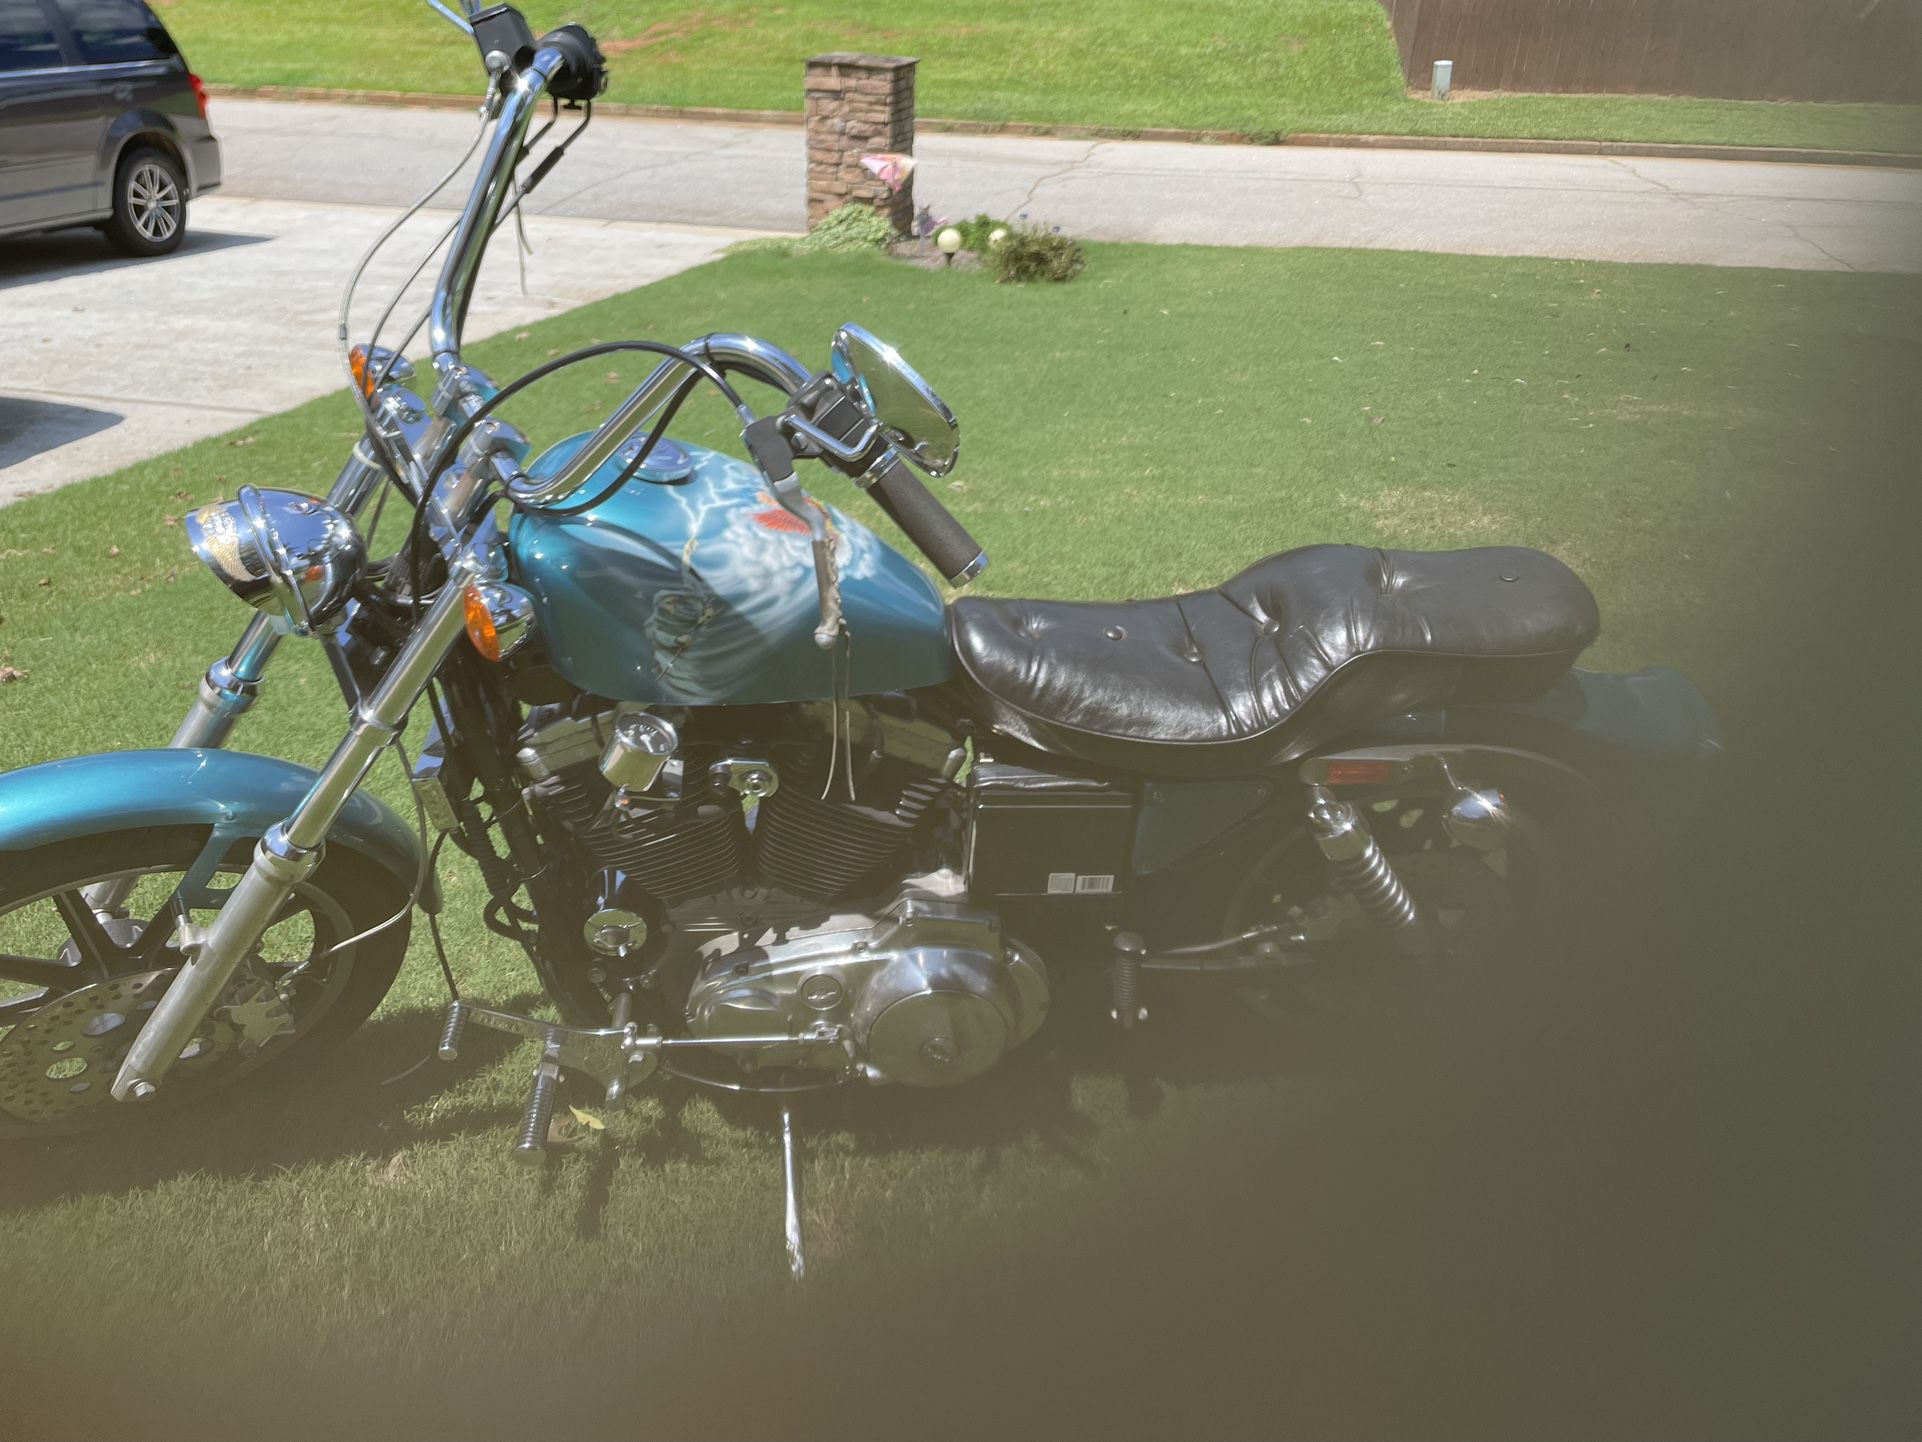 1990 1200 cc Harley Davidson